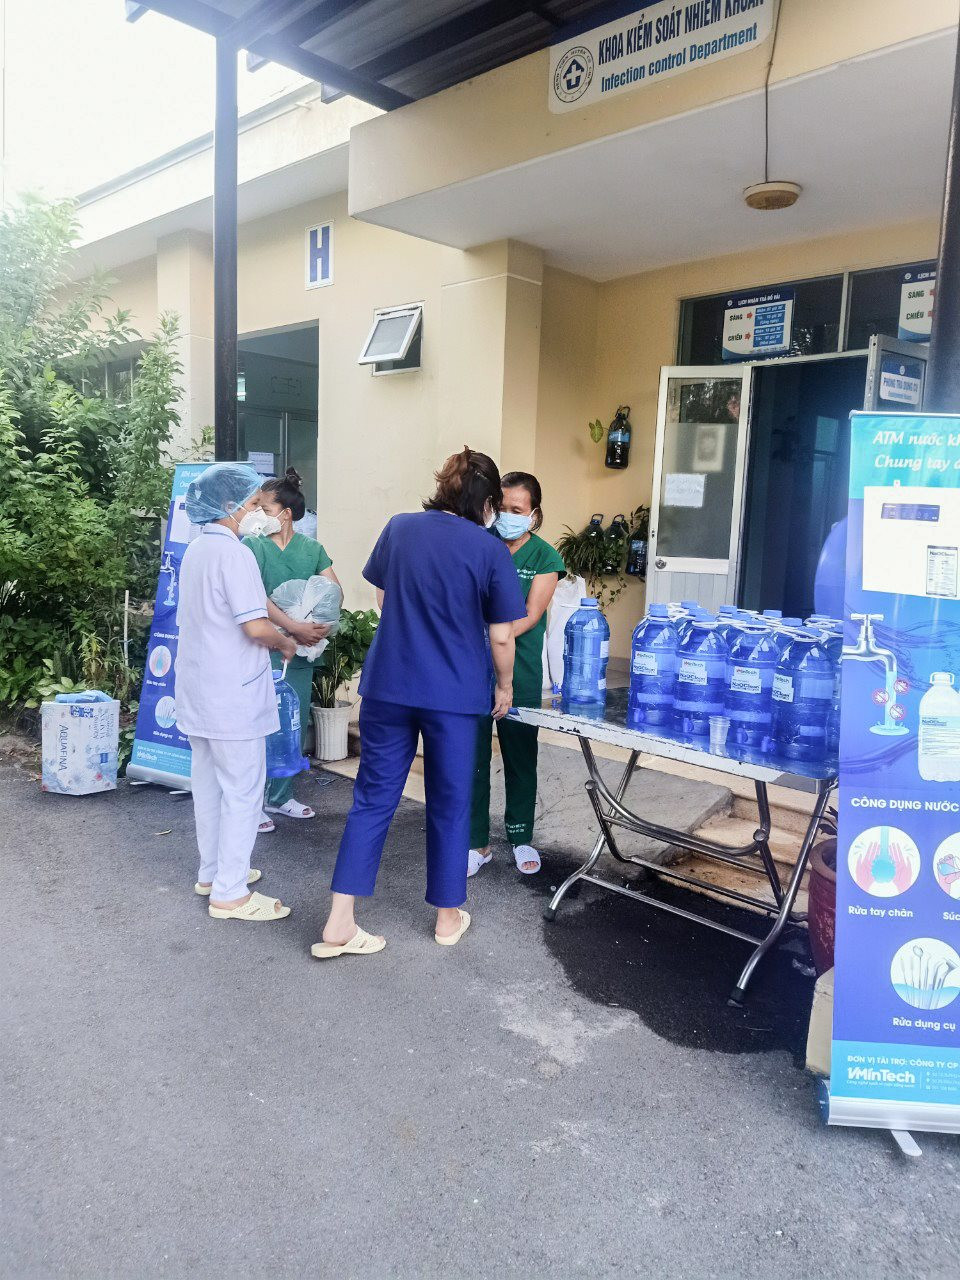 Nước khử khuẩn lấy từ cây ATM sẽ được nhân viên y tế mang đến từng phòng cho các bệnh nhân điều trị COVID-19